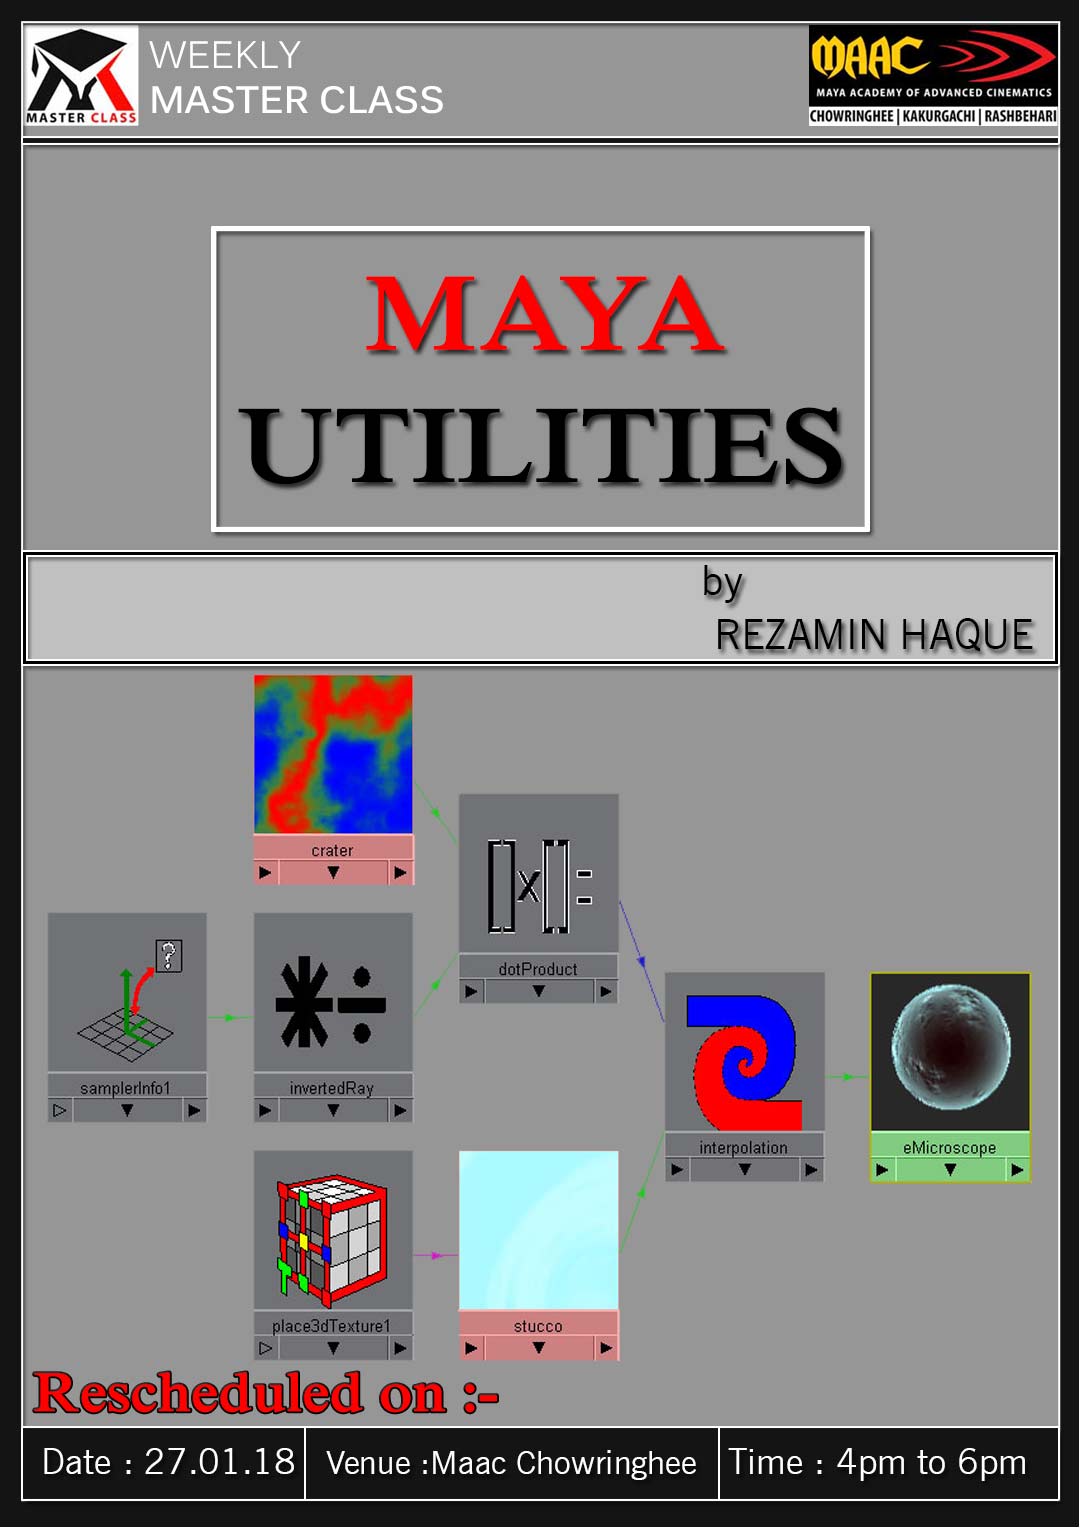 Weekly Master Class on Maya Utilities